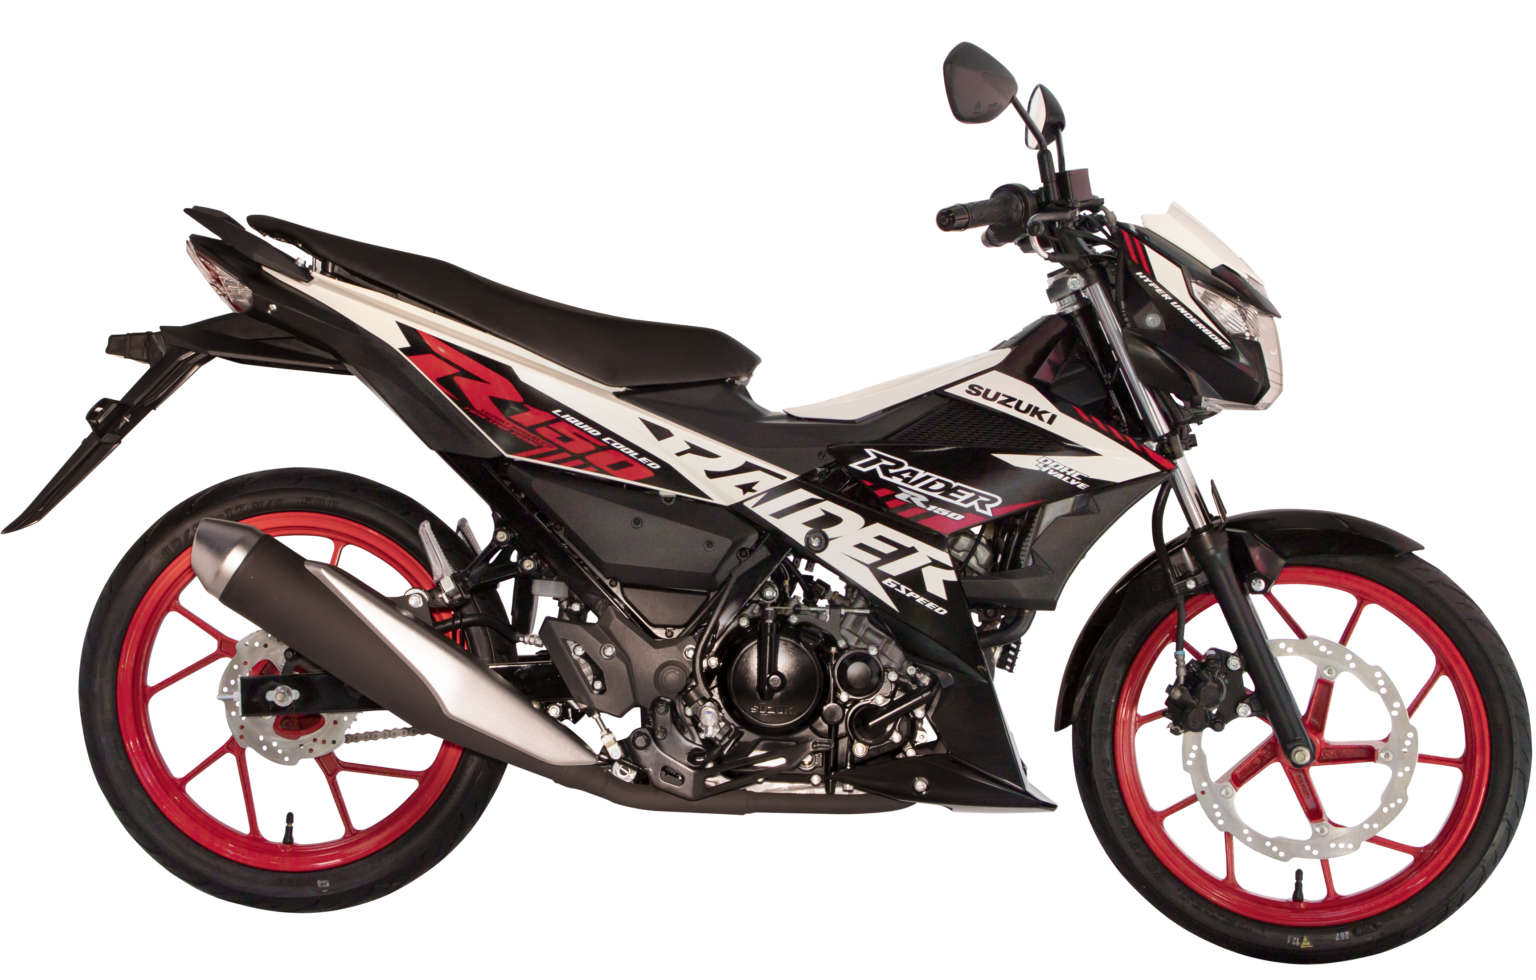 Raider R150 Fuel Injection Suzuki Motorcycles Philippines